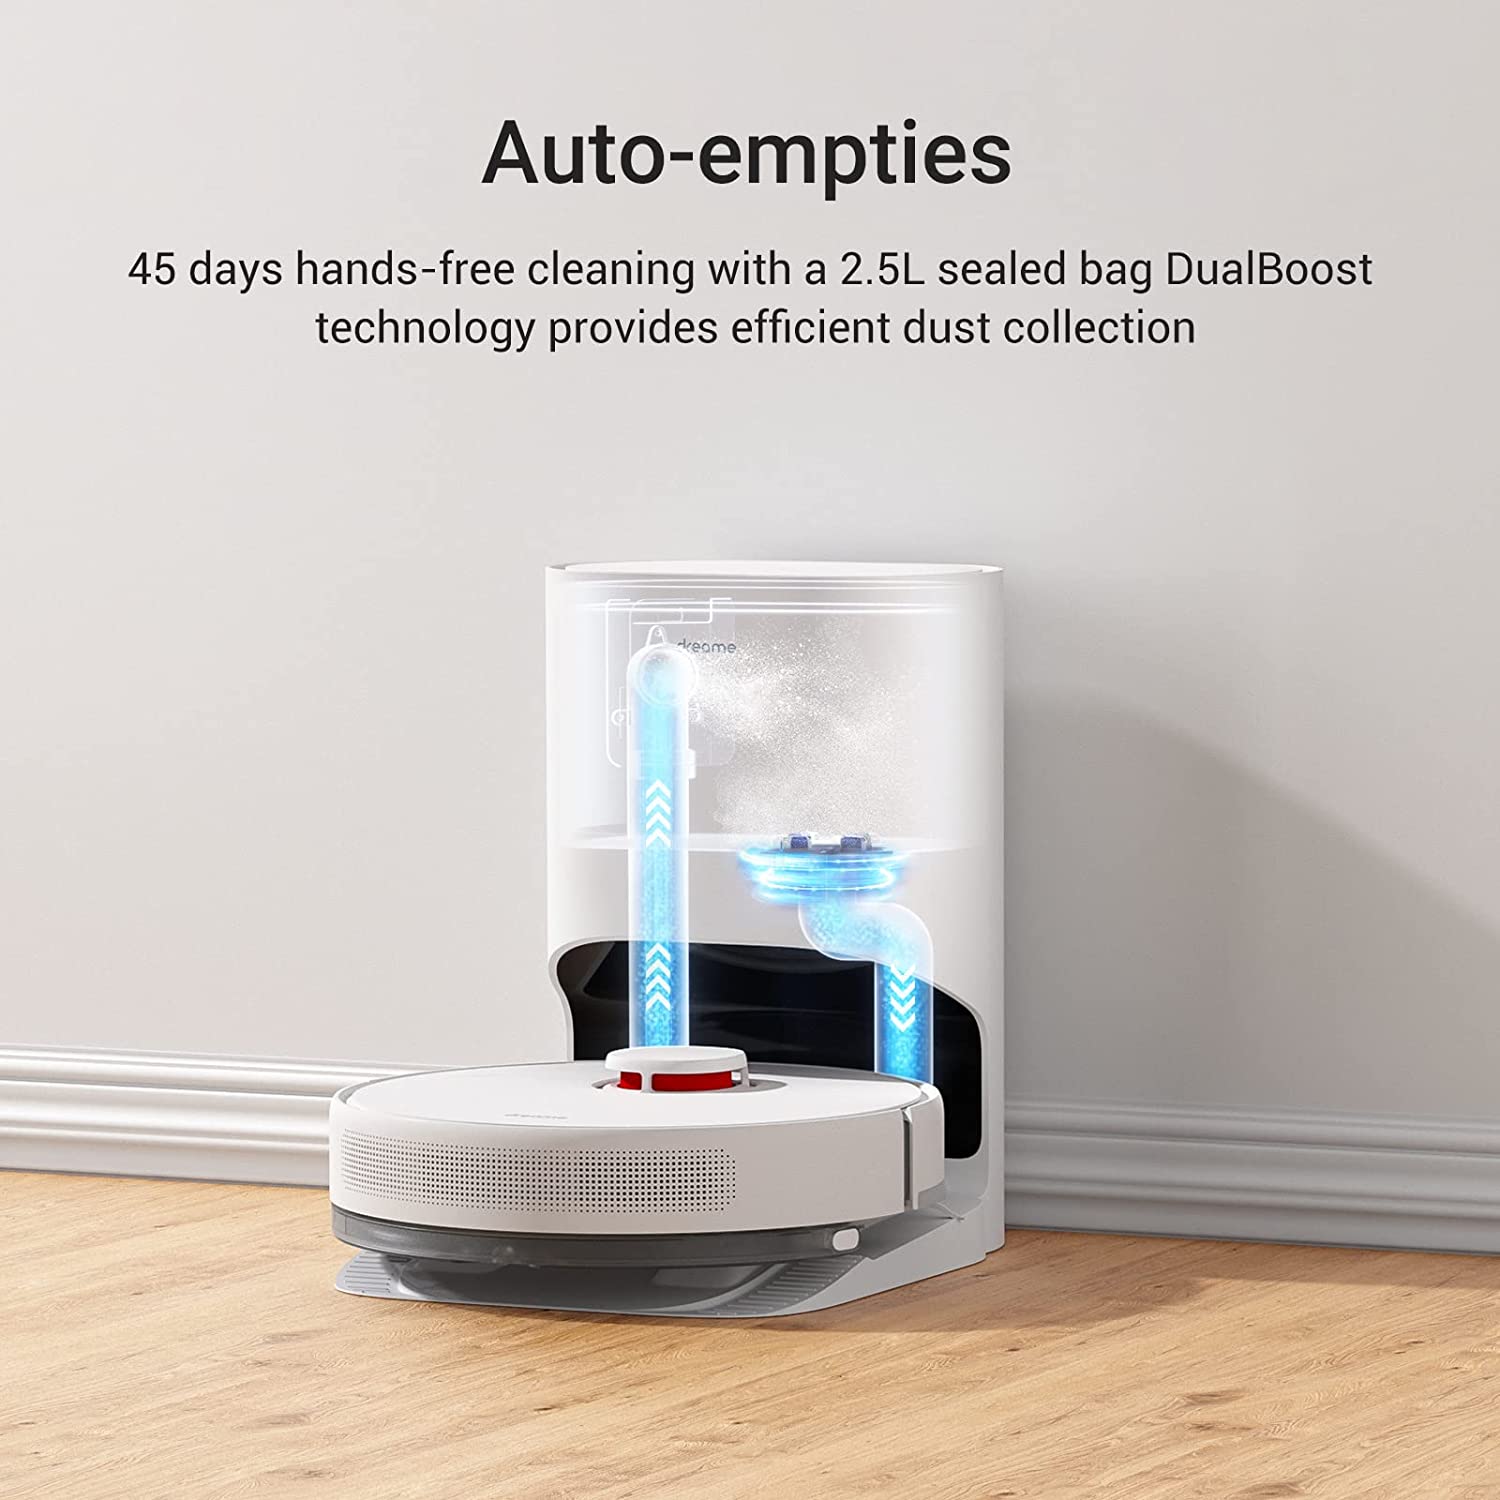 D10 Plus Robotic Vacuum Cleaner - Dreame